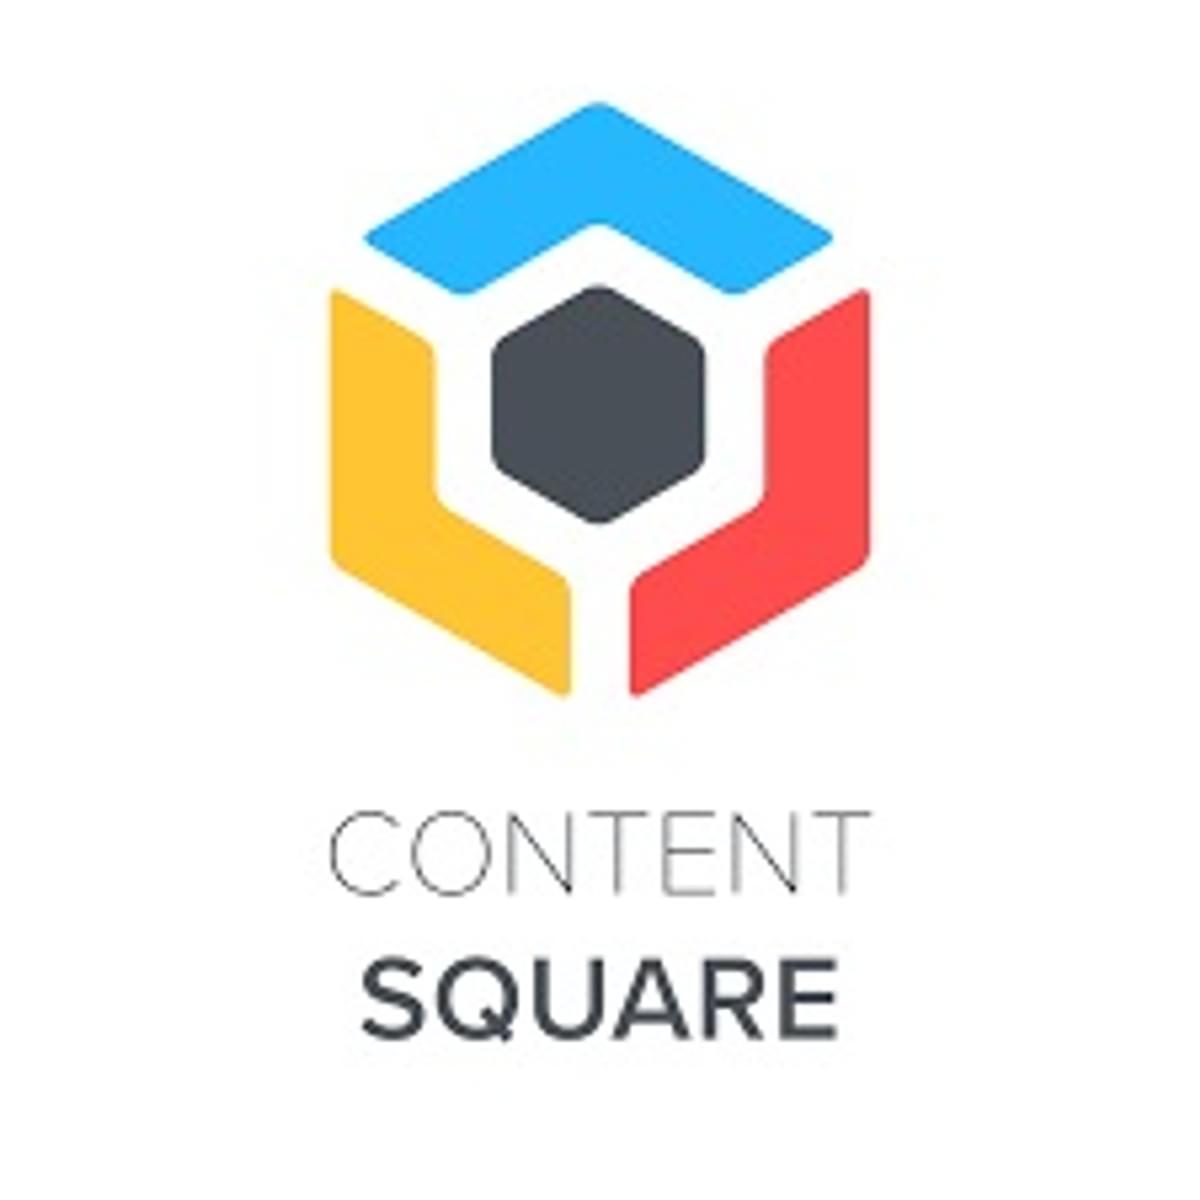 Contentsquare haalt bijna tweehonderd miljoen dollar op image